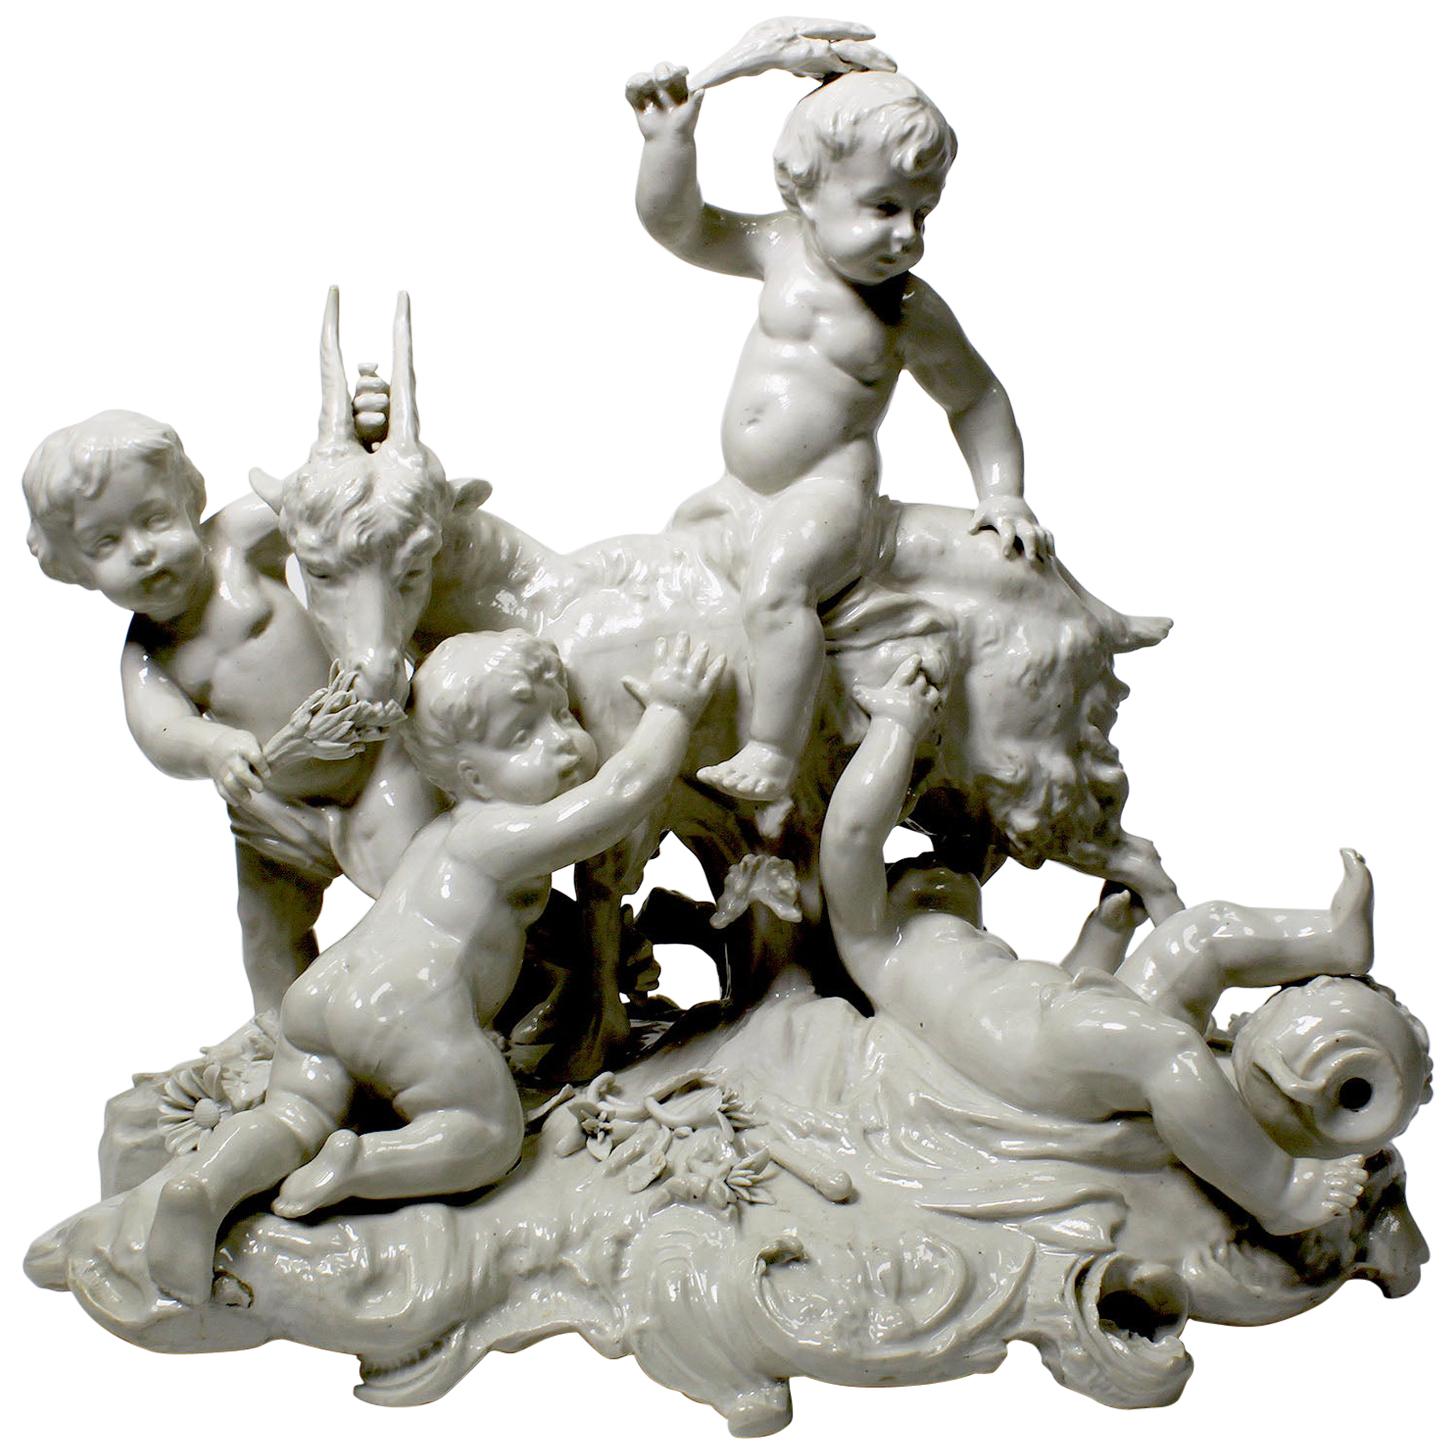 Groupe fantaisiste de quatre chérubins jouant avec une chèvre en porcelaine émaillée blanche